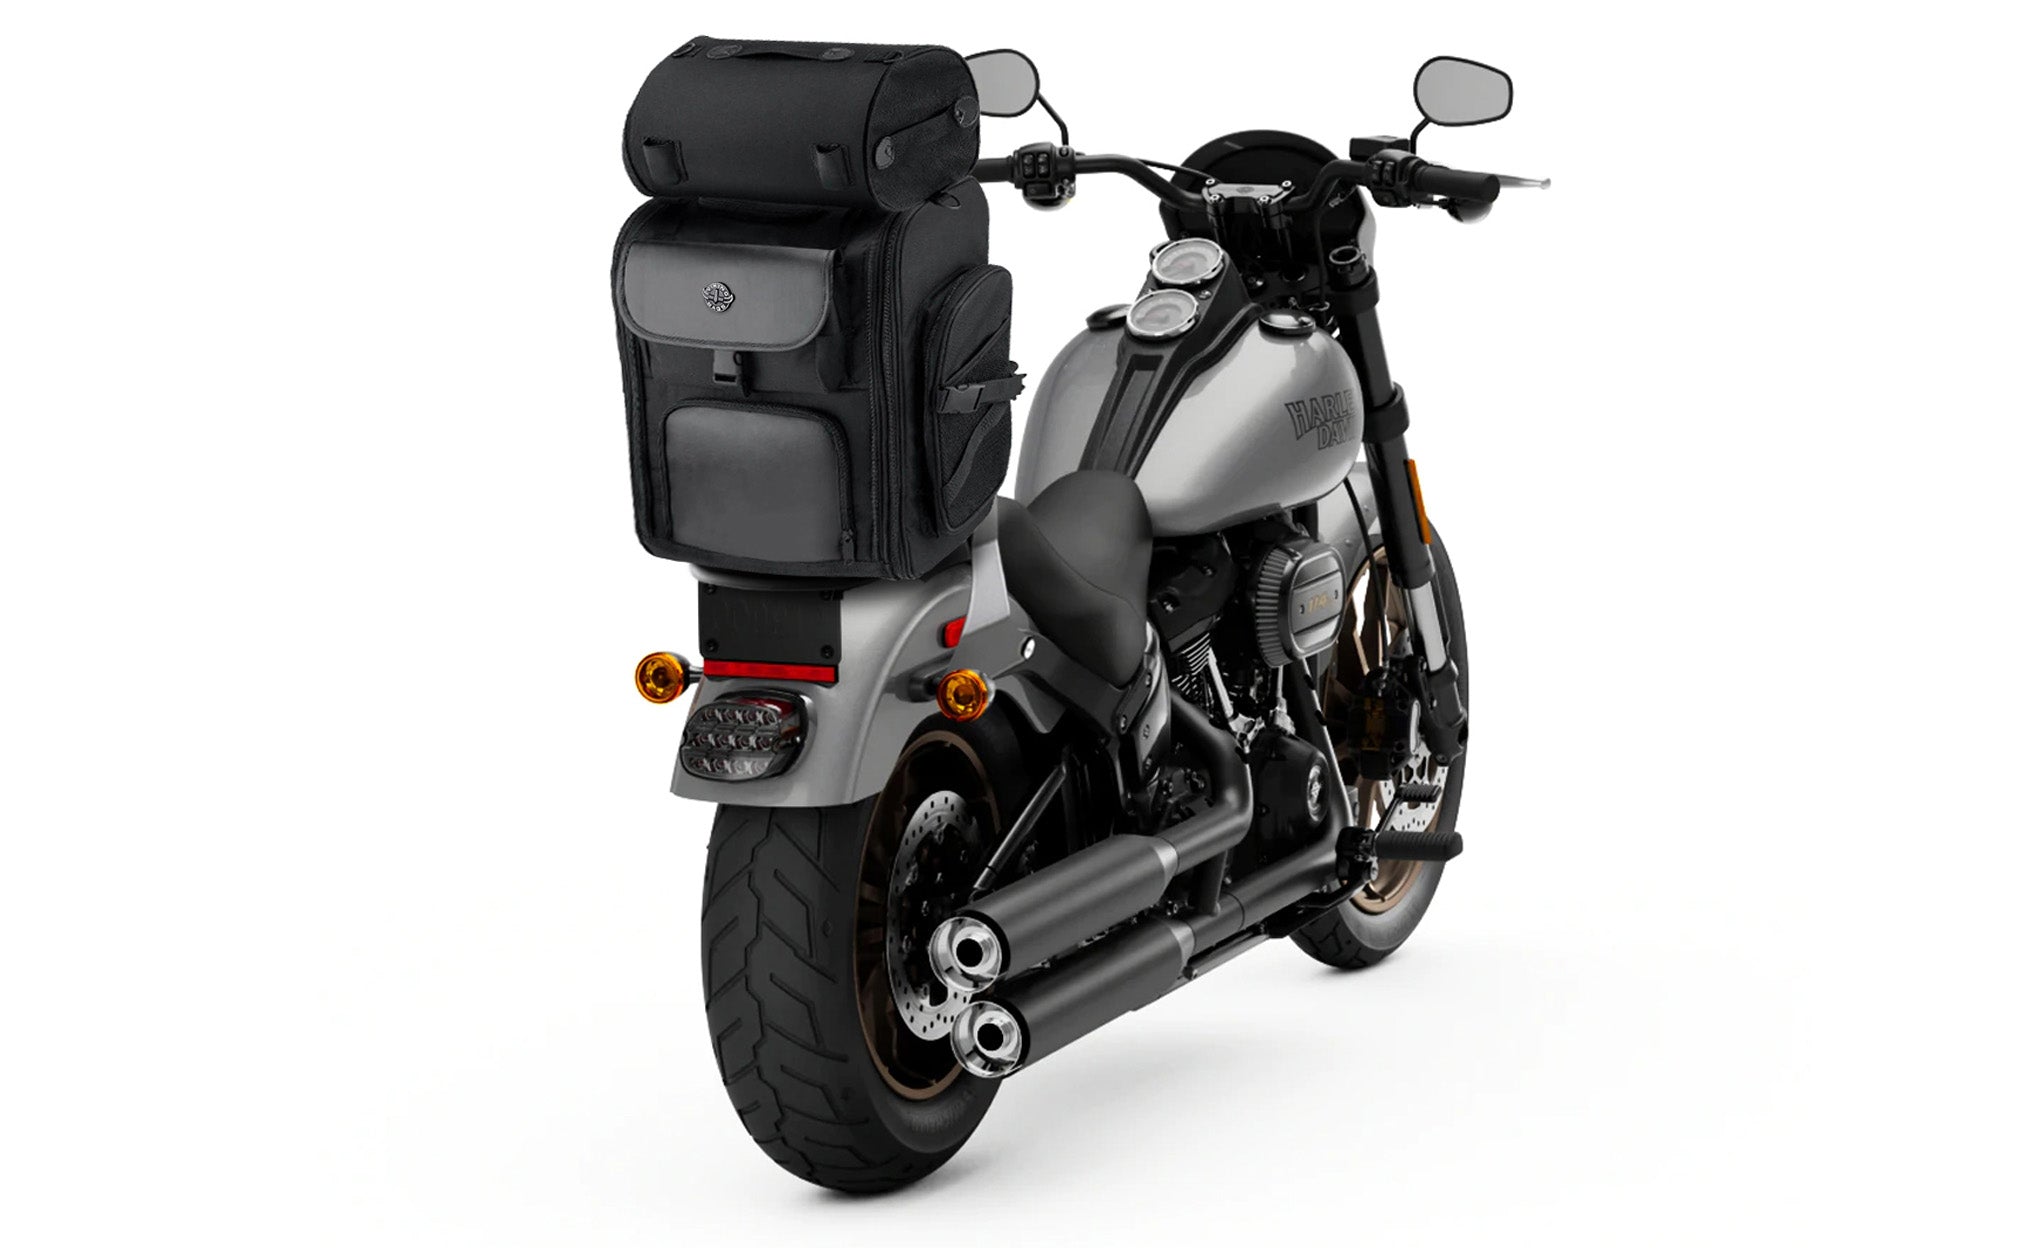 Viking Dwarf Medium Motorcycle Tail Bag Bag on Bike View @expand